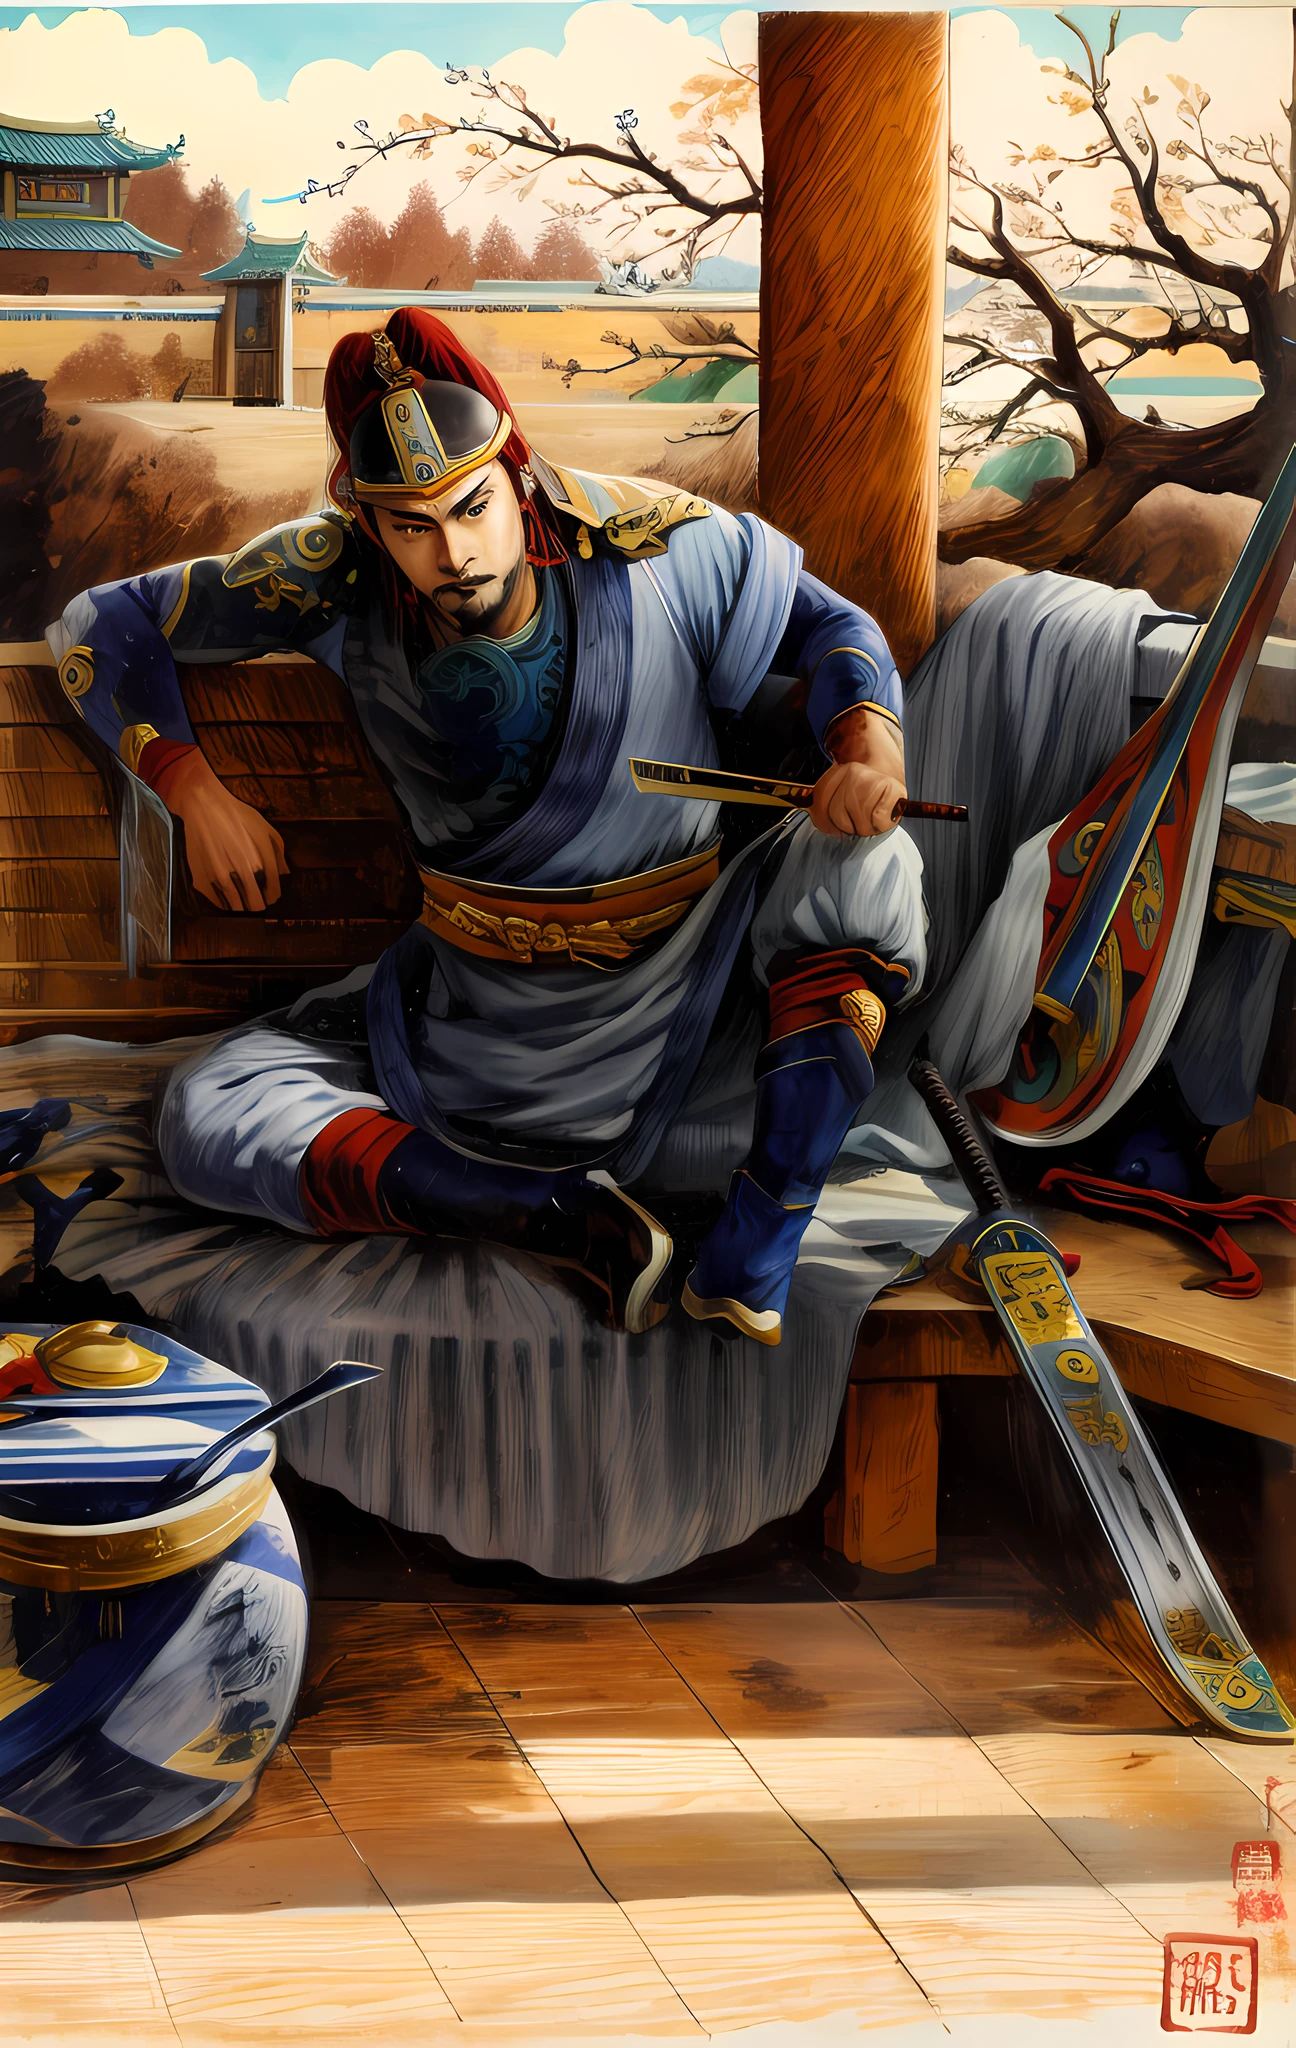 Zeichnen Sie einen Krieger der Song-Dynastie, der mit einem Fächer auf einer Bank sitzt, Inspiriert von Chen Danqing, Chinesischer Krieger，Autor：Zhang Daqian wurde von Yang Borun inspiriert, Fanart, von Ni Yuanlu, Inspiriert von De Dunbang, Inspiriert von Wang Jian, Autor：Chen Danqing, inspiriert von Lu Zhi, Autor：Yoon Du-seop, atlantischer Krieger, inspiriert von Li Kan, es ist Warlord, epische Vollfarbillustration, Schnüffelhunde als Barbaren, alter Krieger, Chinesischer Krieger, Naranbaatar Ganbold, Banditen, Zhangfei